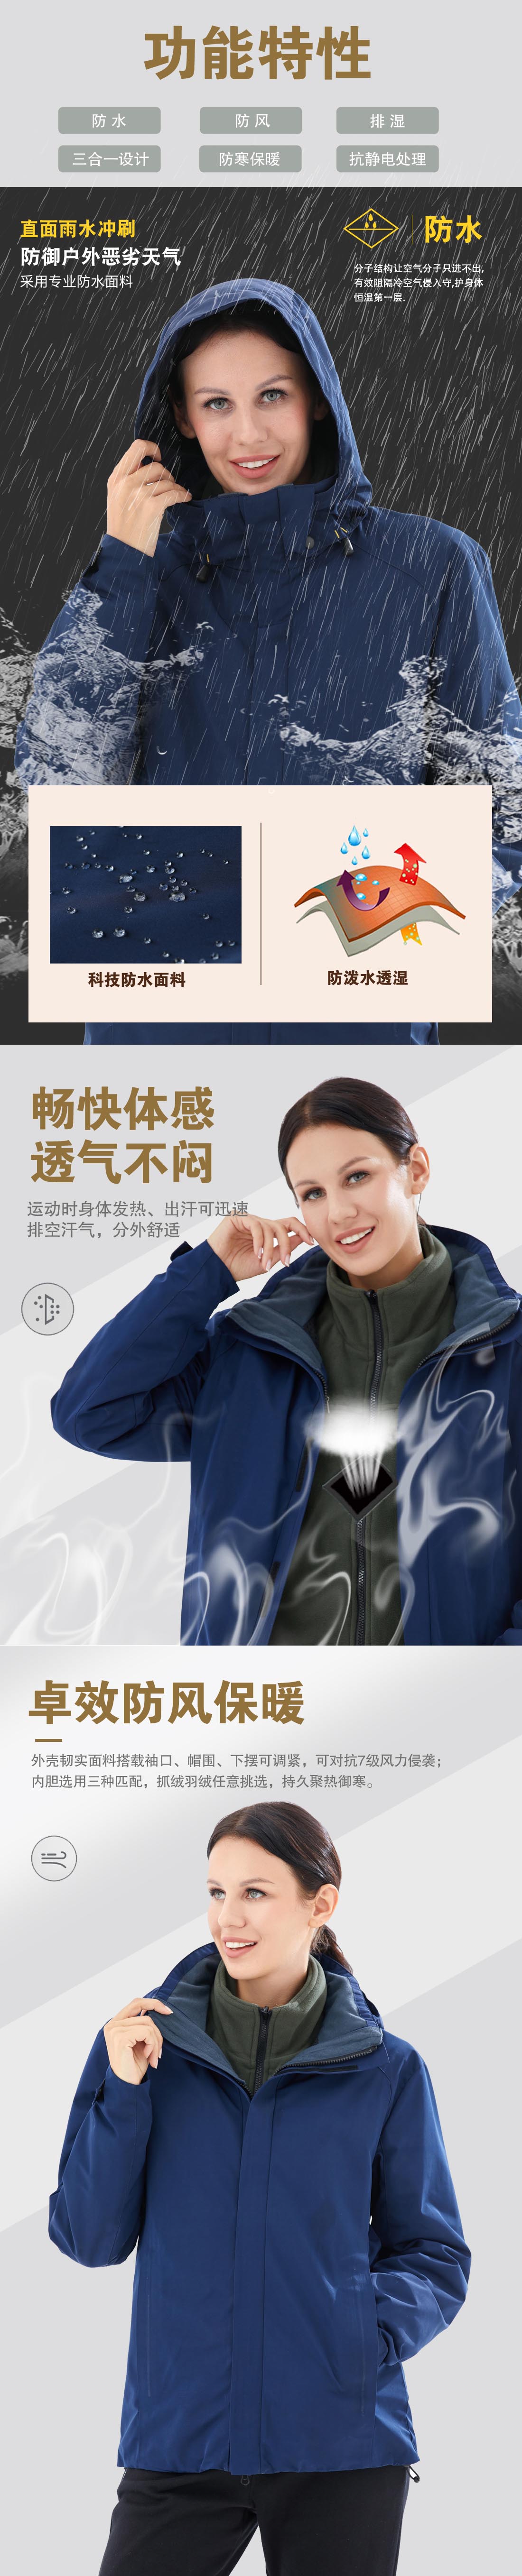 藏藍色沖鋒衣CF1901-6(圖2)